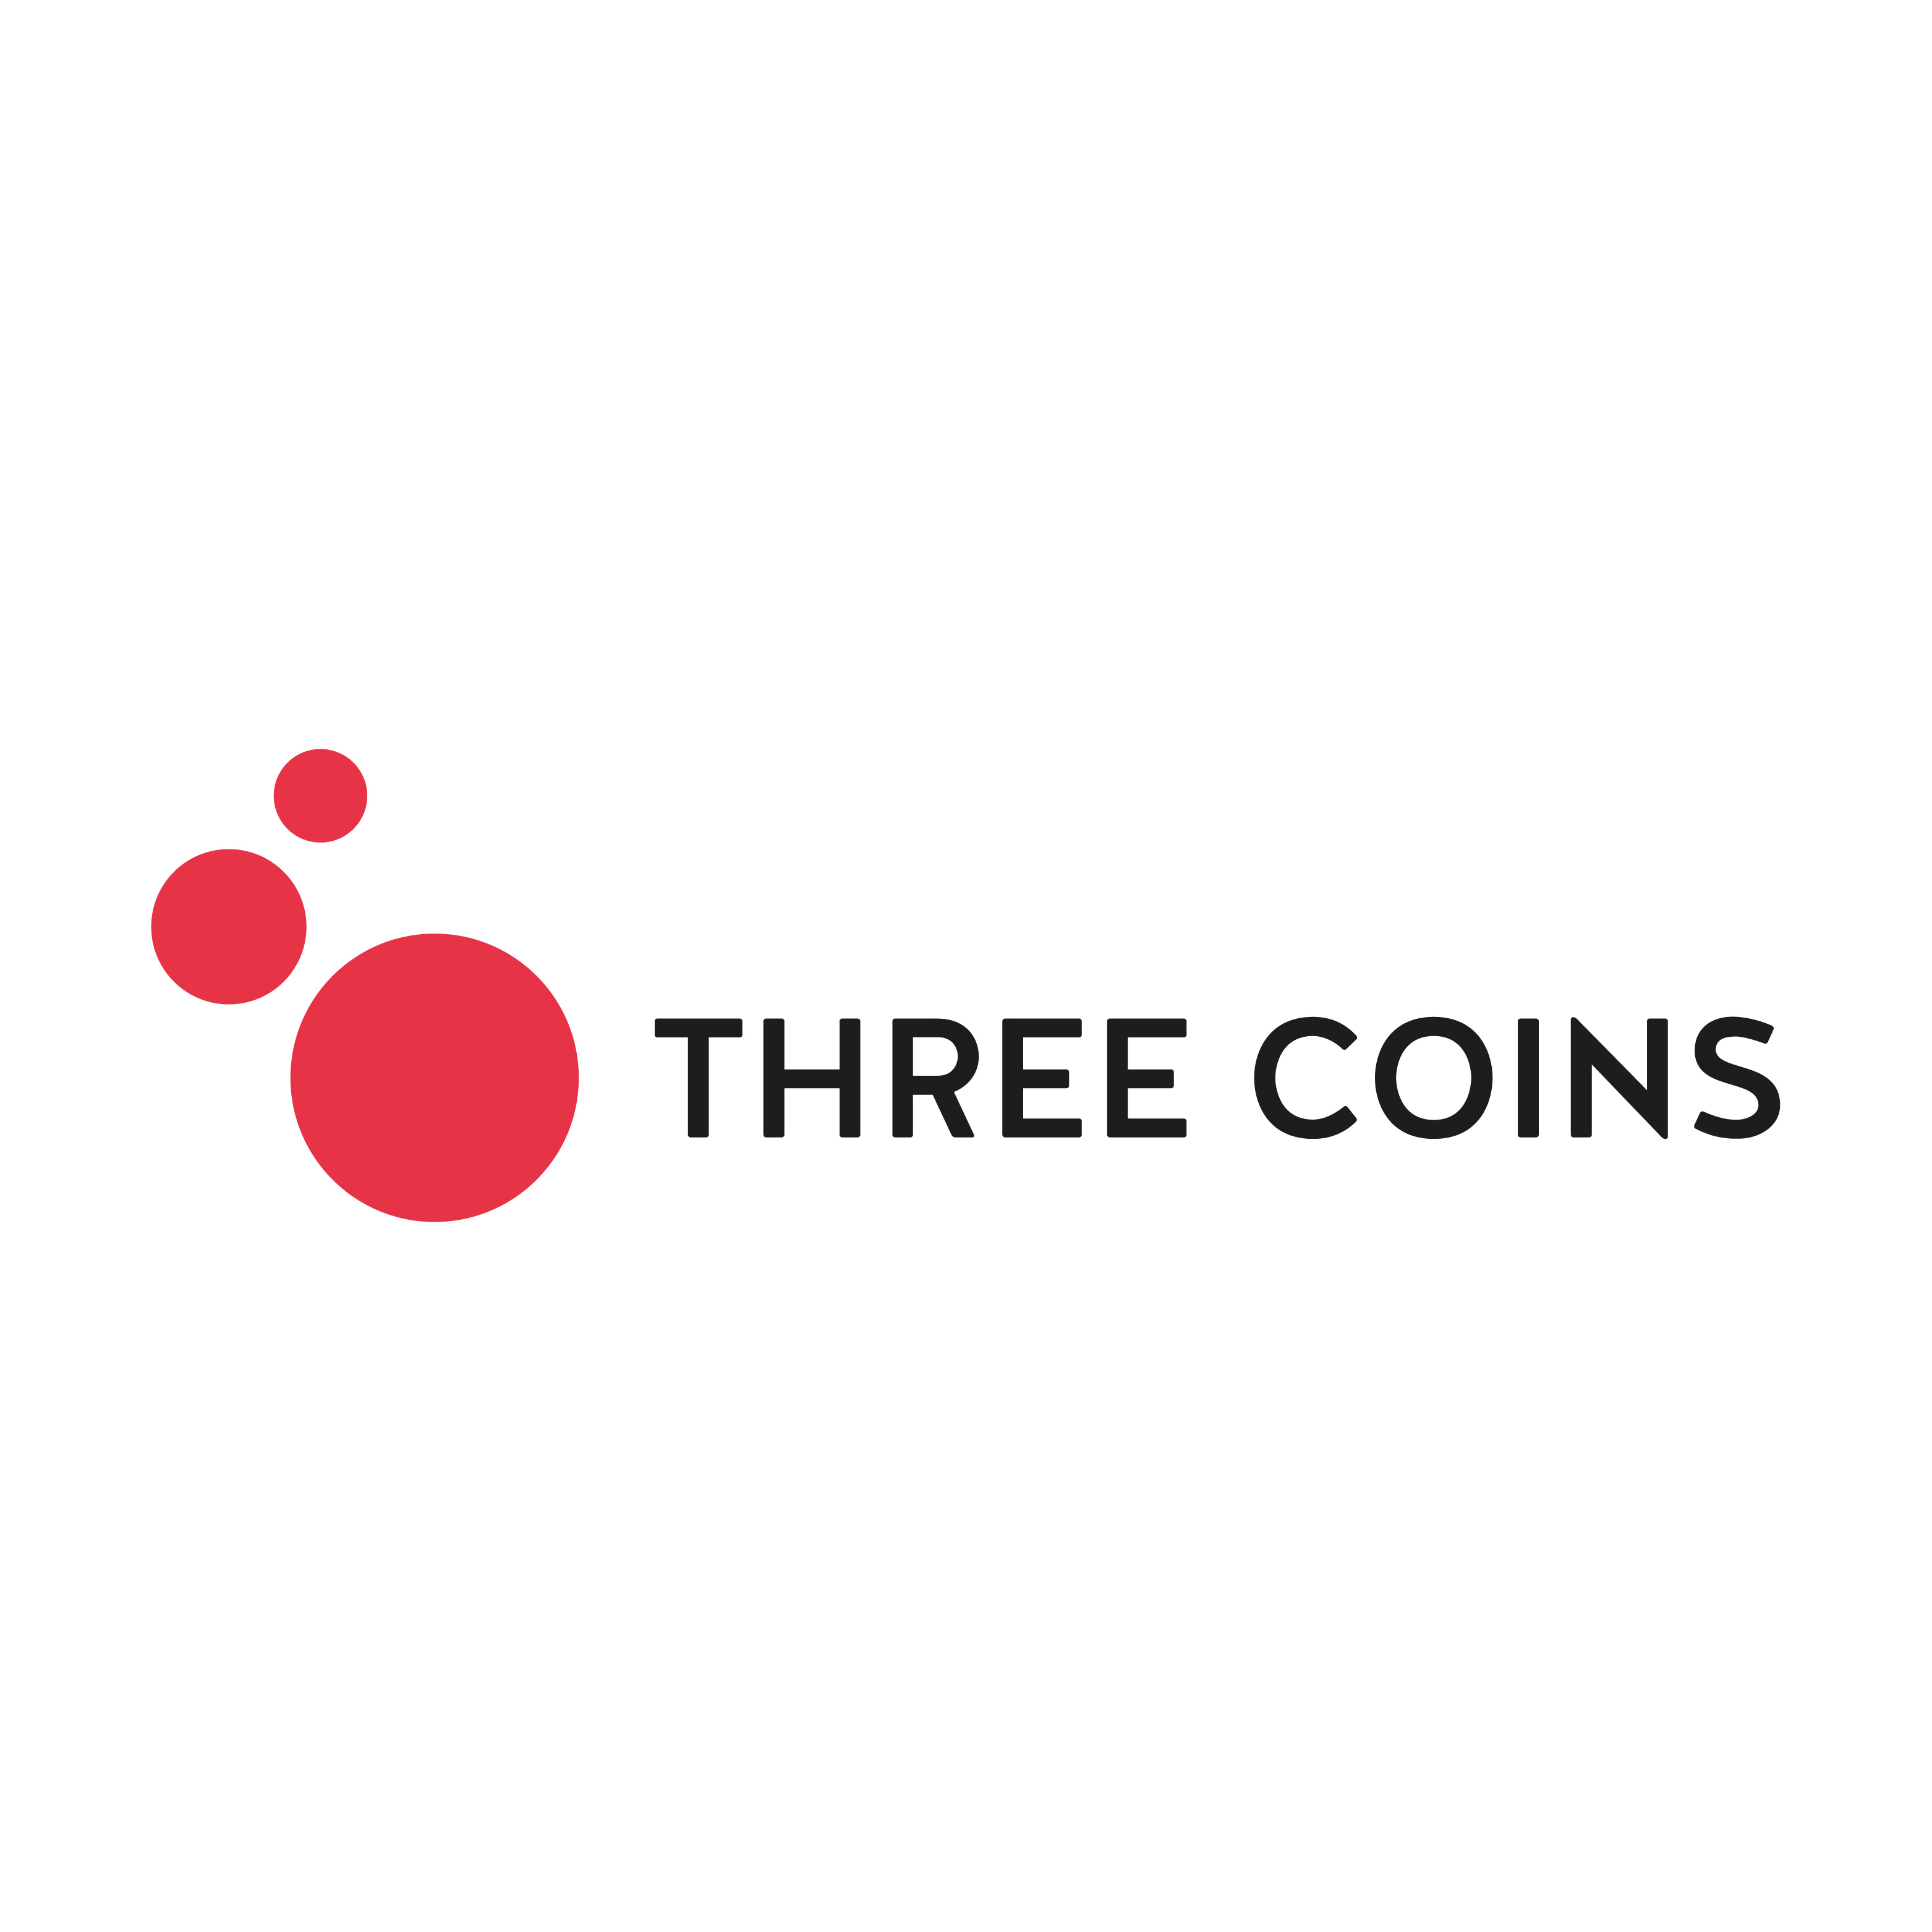 Three Coins im Portrait